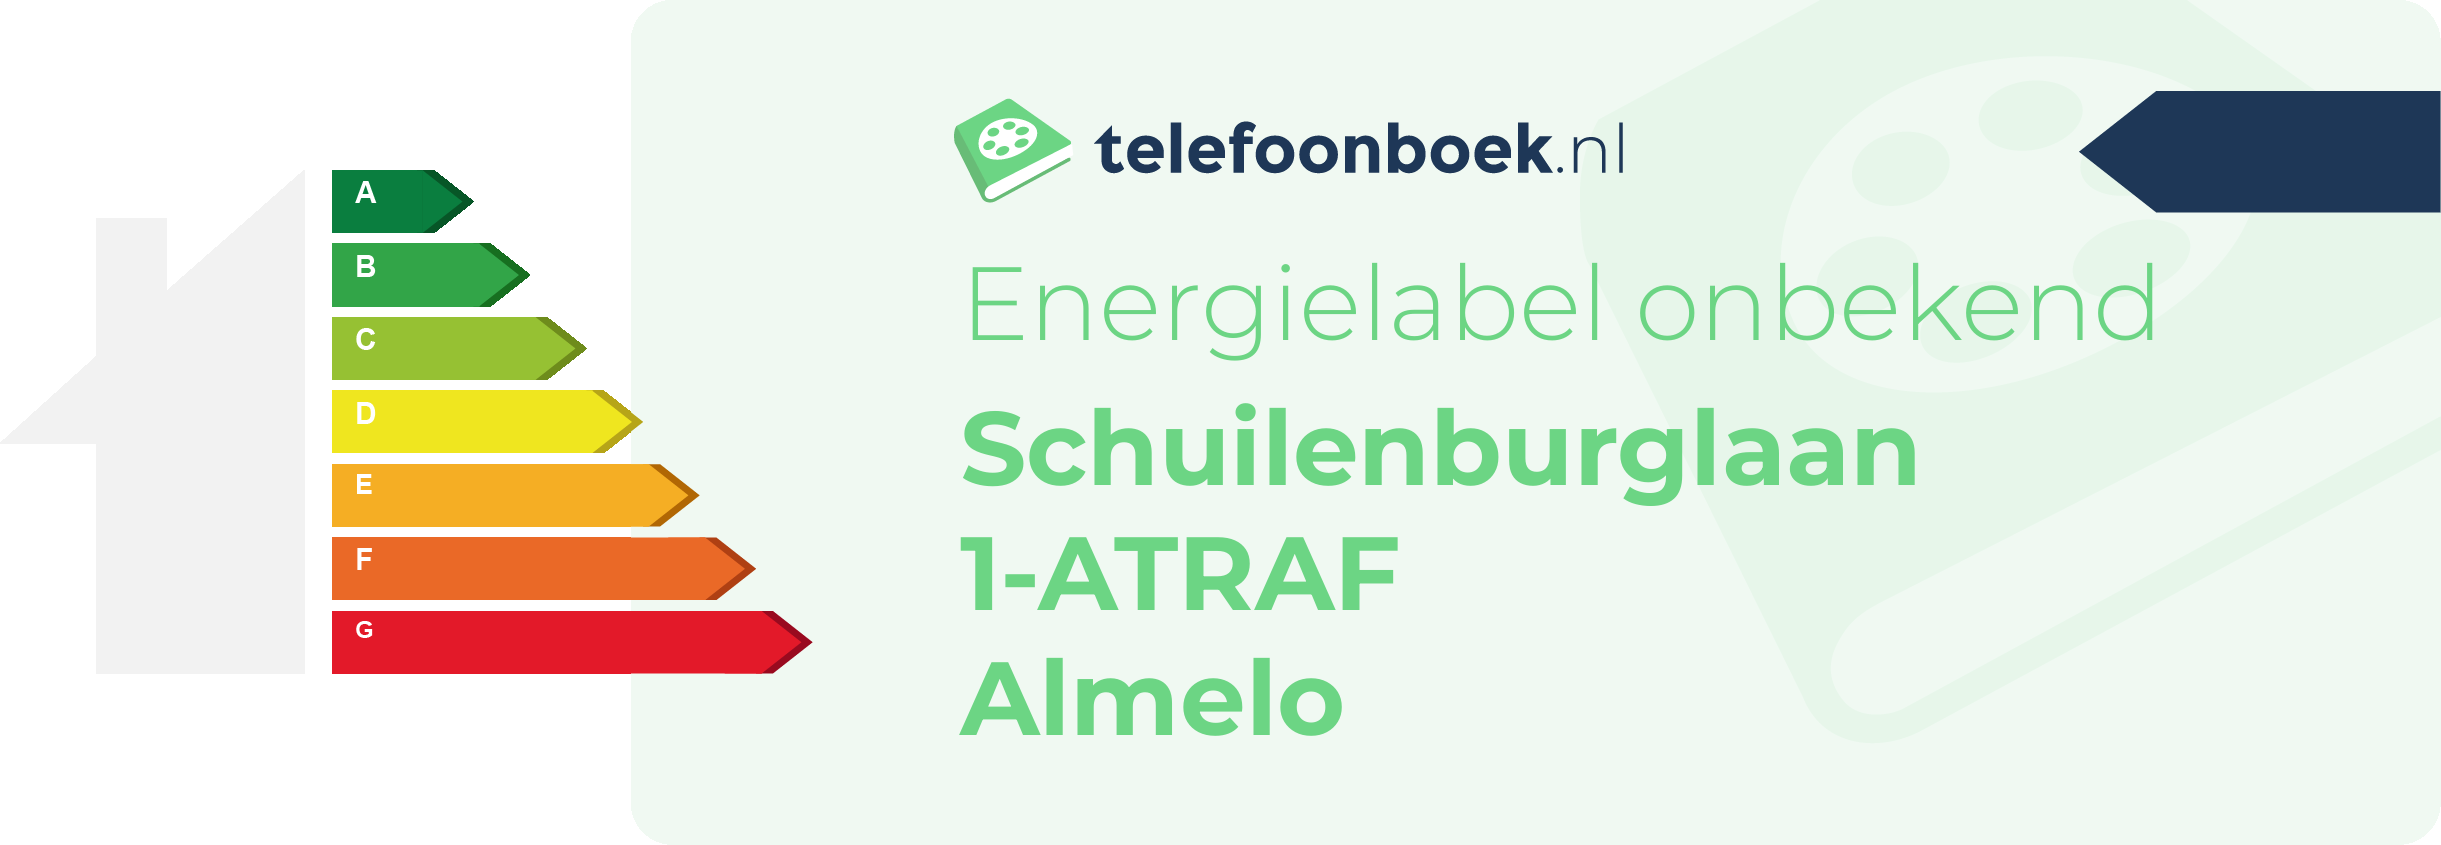 Energielabel Schuilenburglaan 1-ATRAF Almelo